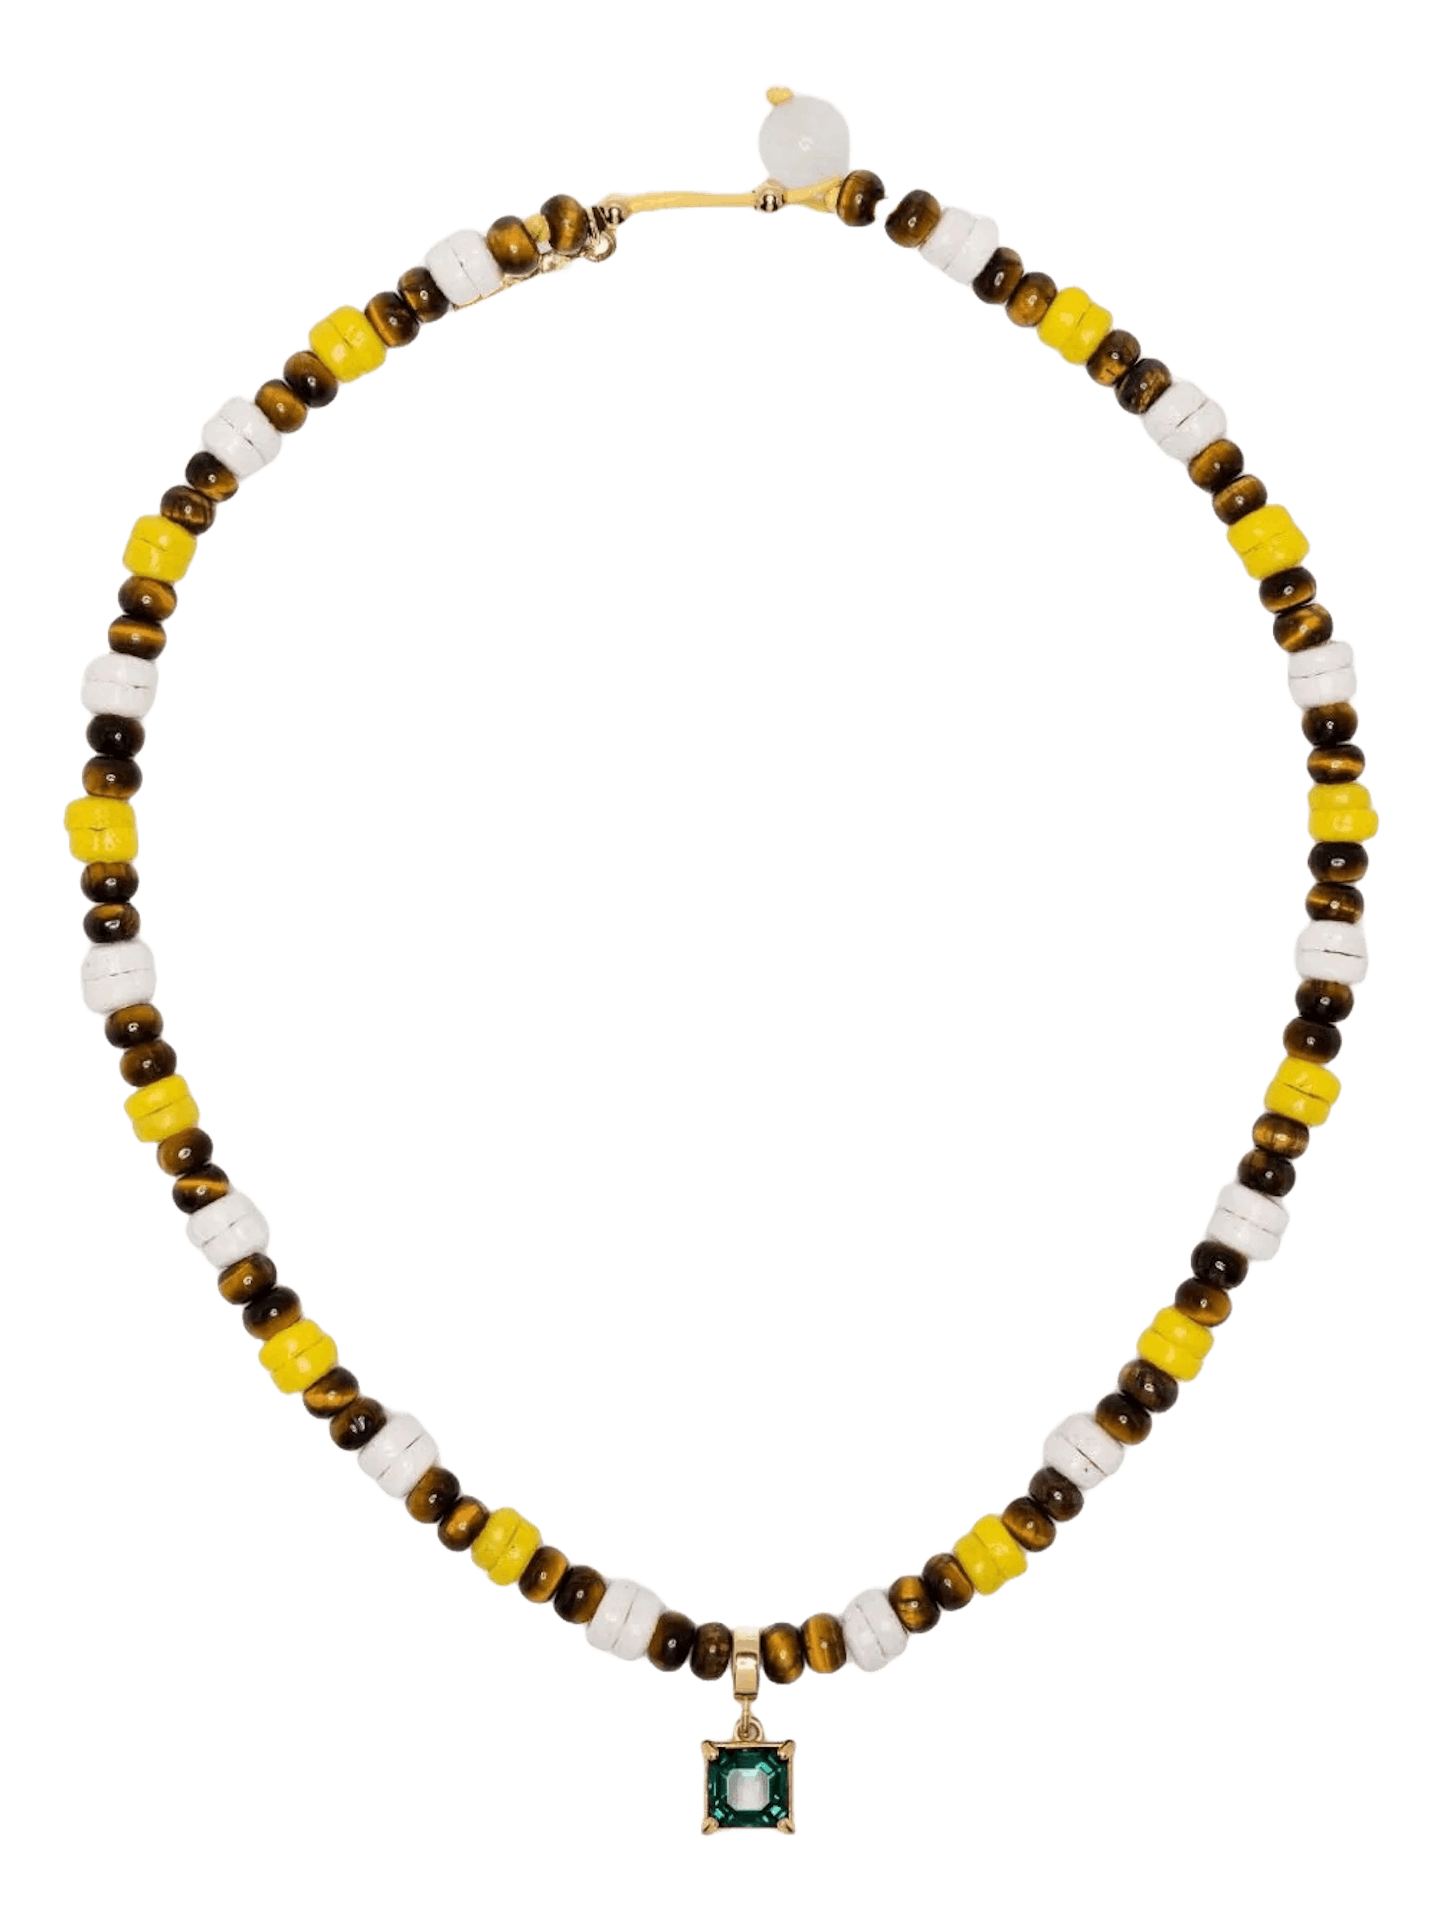 Wales Bonner necklace